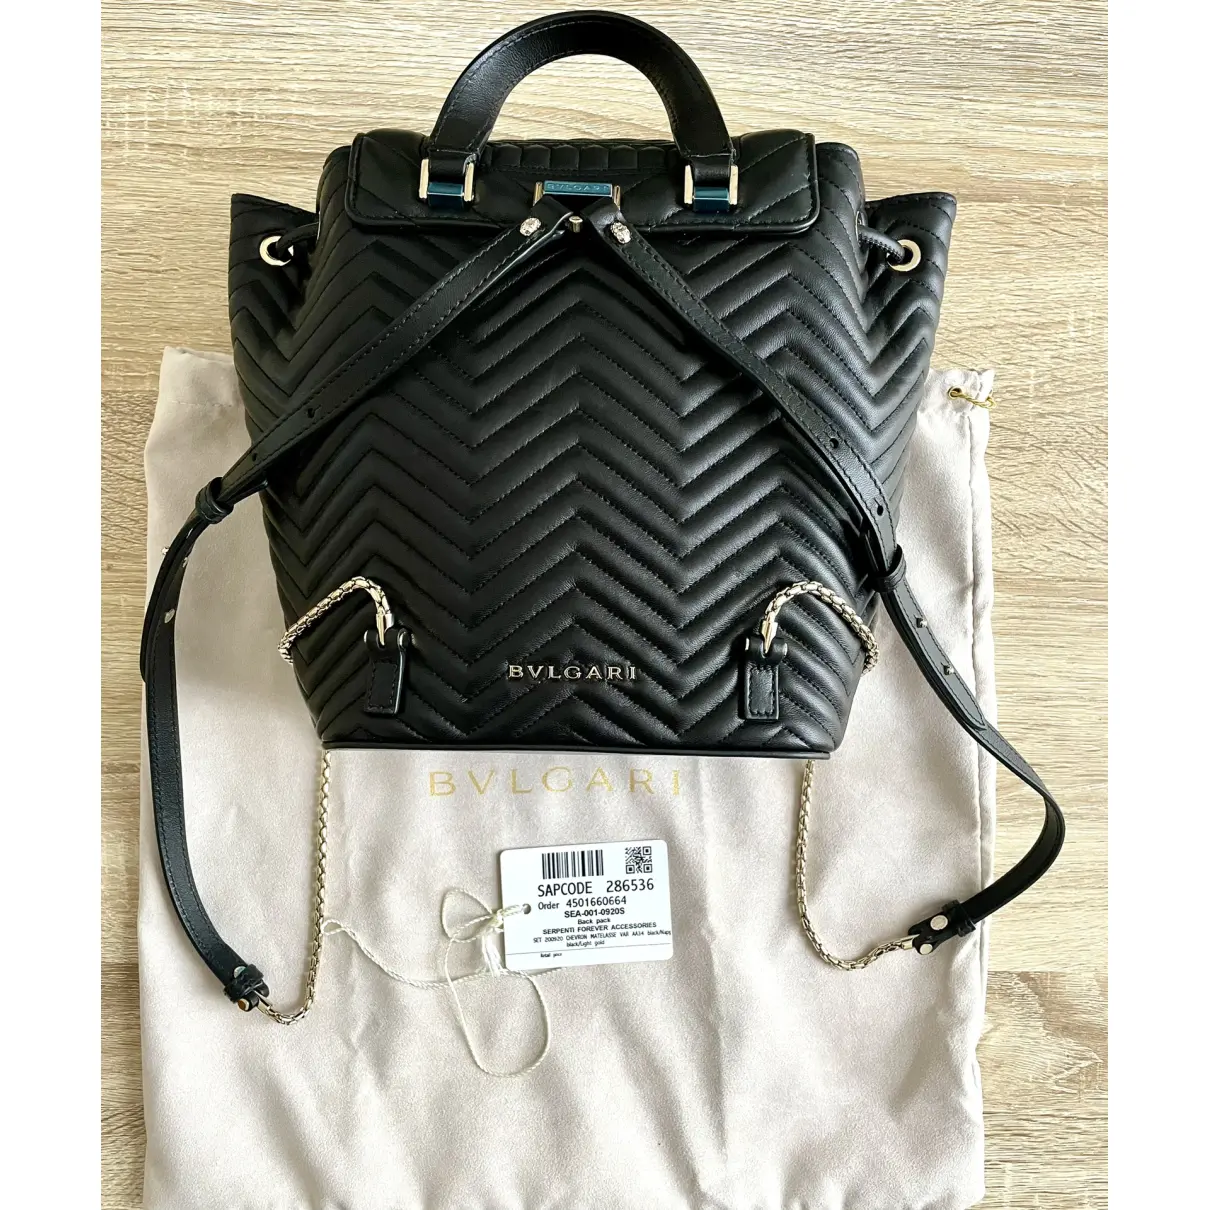 Buy Bvlgari Serpenti leather backpack online